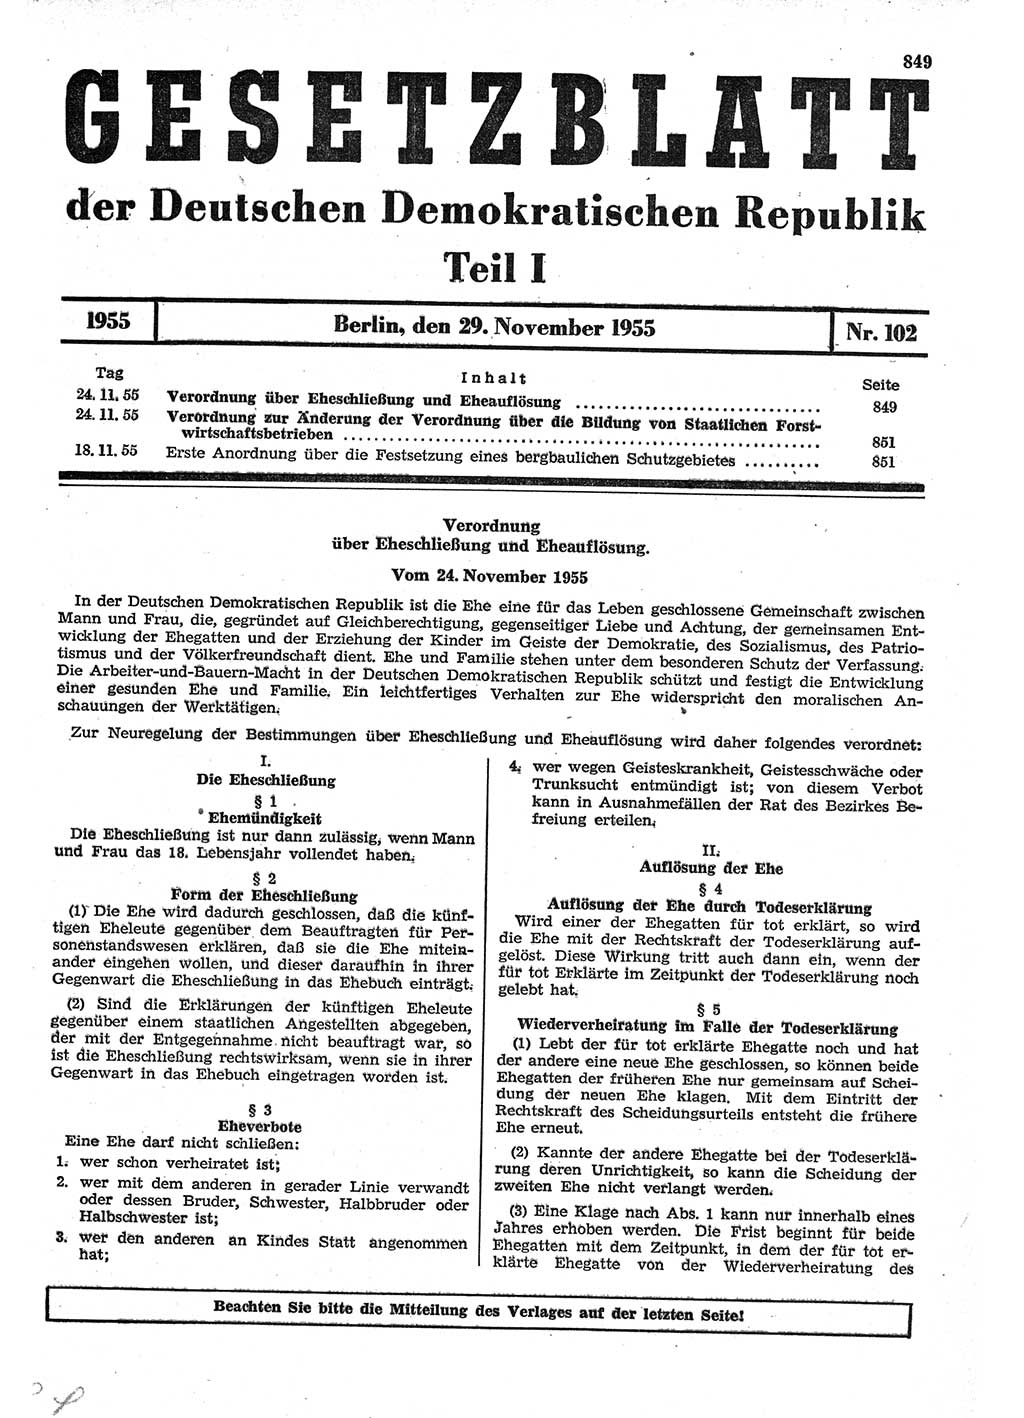 Gesetzblatt (GBl.) der Deutschen Demokratischen Republik (DDR) Teil Ⅰ 1955, Seite 849 (GBl. DDR Ⅰ 1955, S. 849)